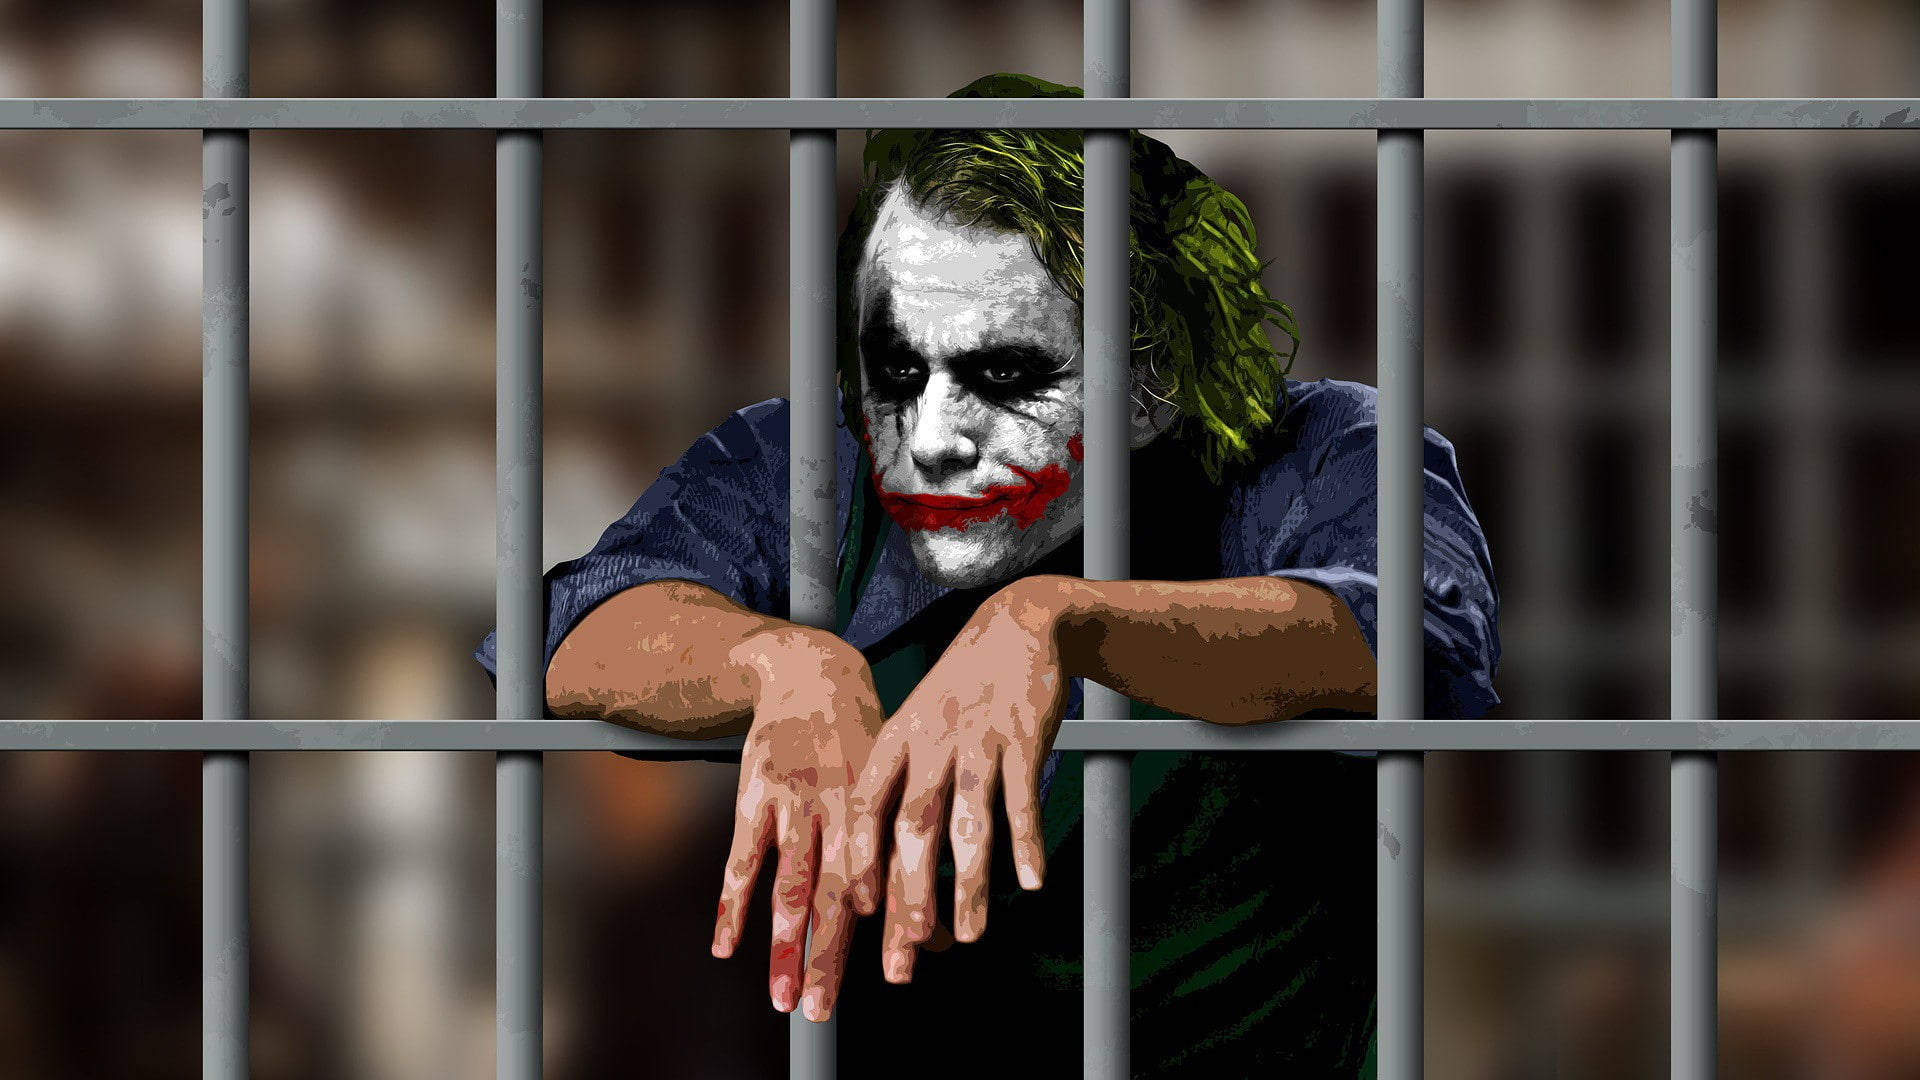 Download Shallow Focus Heath Ledger Joker Wallpaper 